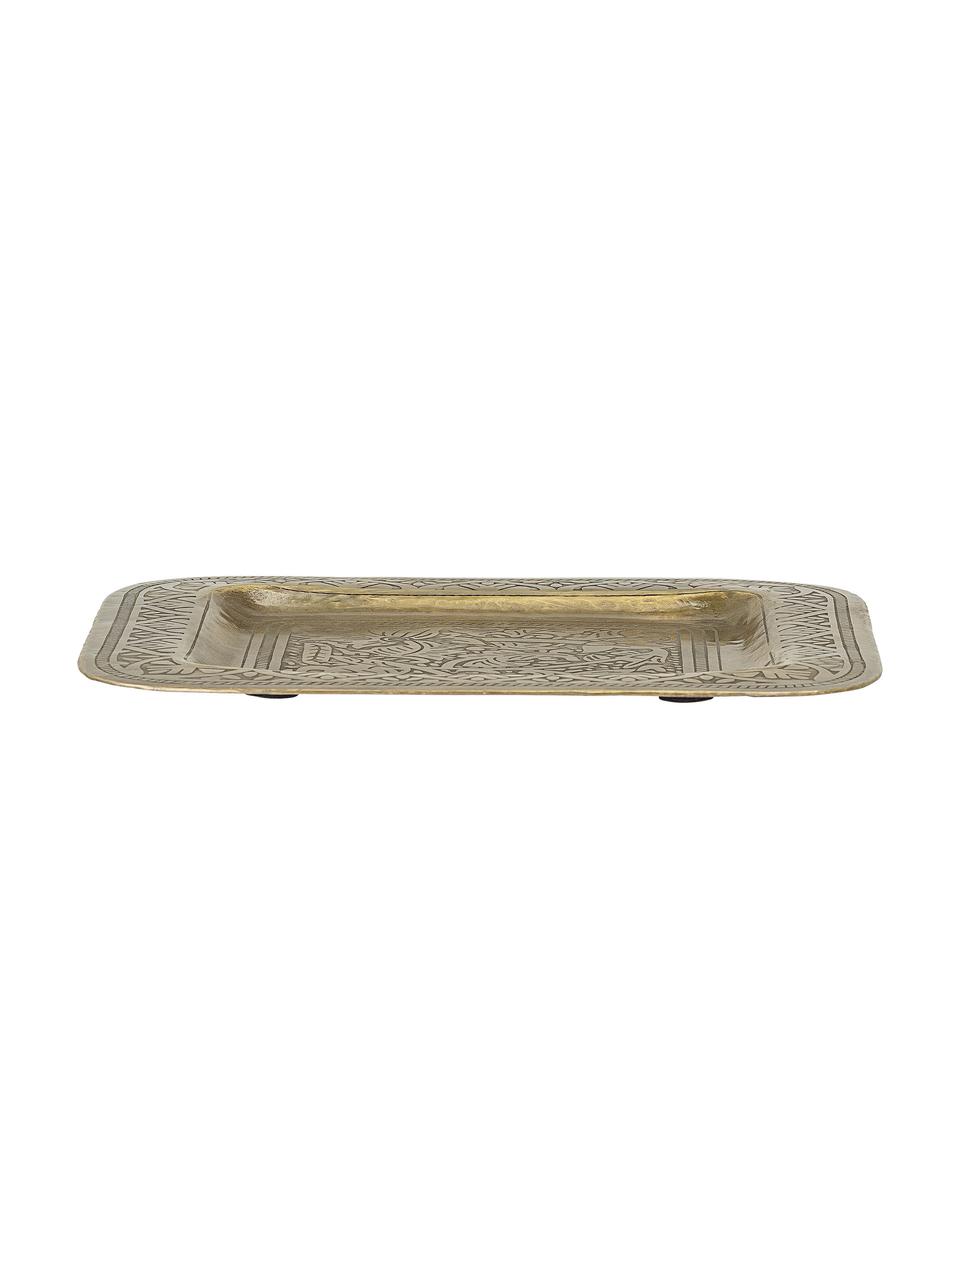 Deko-Tablett Collo aus Metall, Metall, beschichtet, Messingfarben, B 29 x T 29 cm